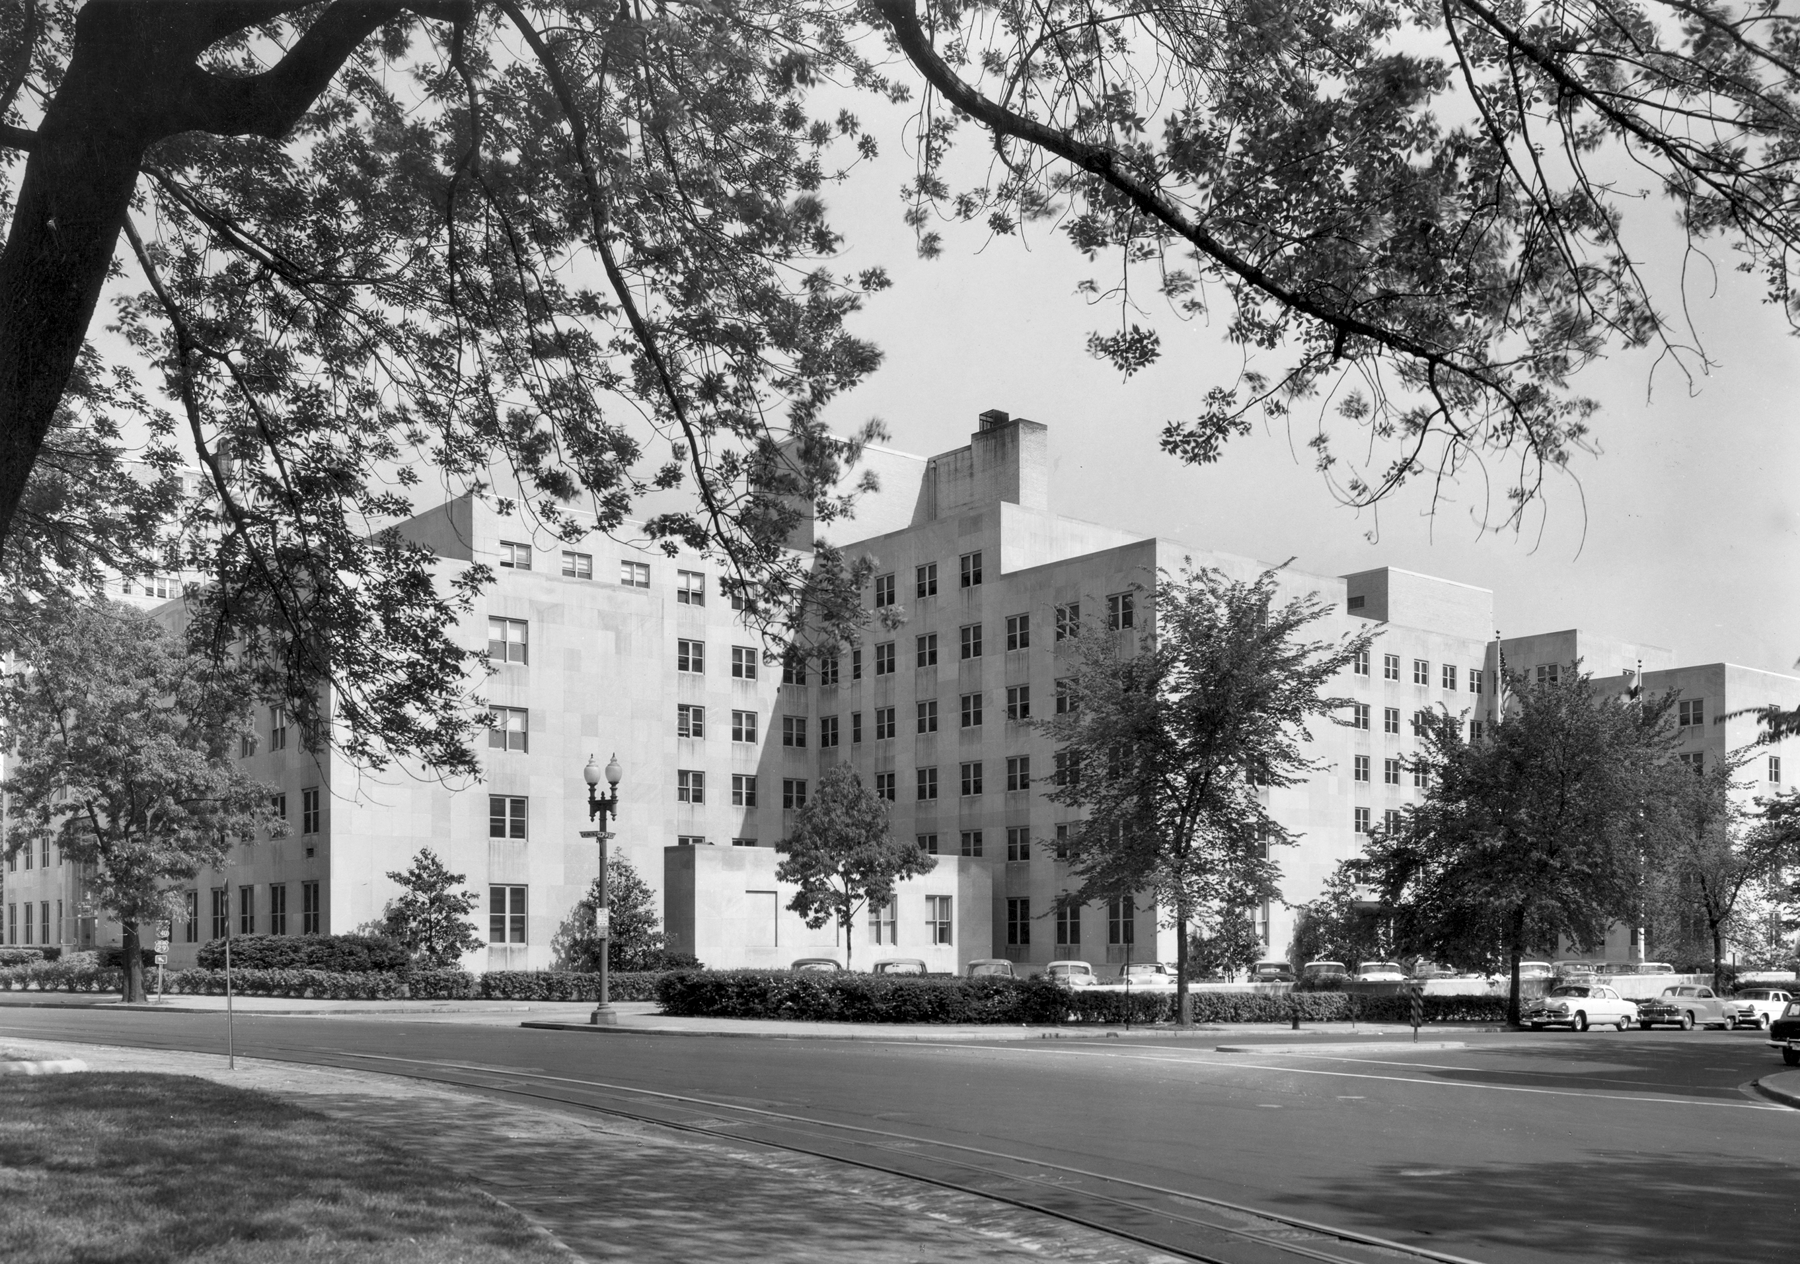 GW Hospital Circa 1955